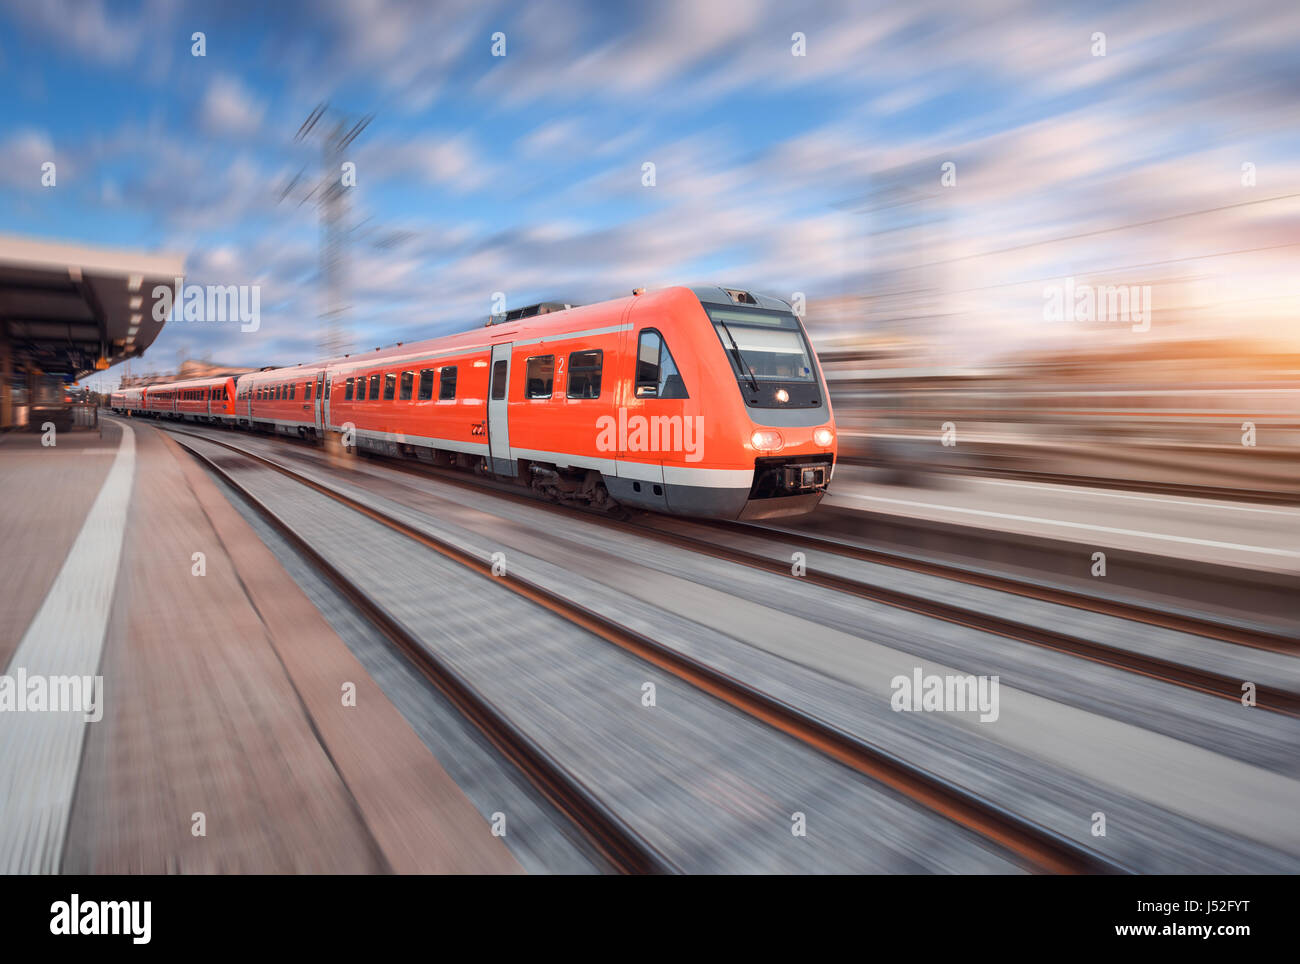 Rote moderne high-Speed-Zug in Bewegung am Bahngleis bei Sonnenuntergang in Europa. Zug am Bahnhof mit Motion blur Effekt. Industrielle Landschaft wi Stockfoto